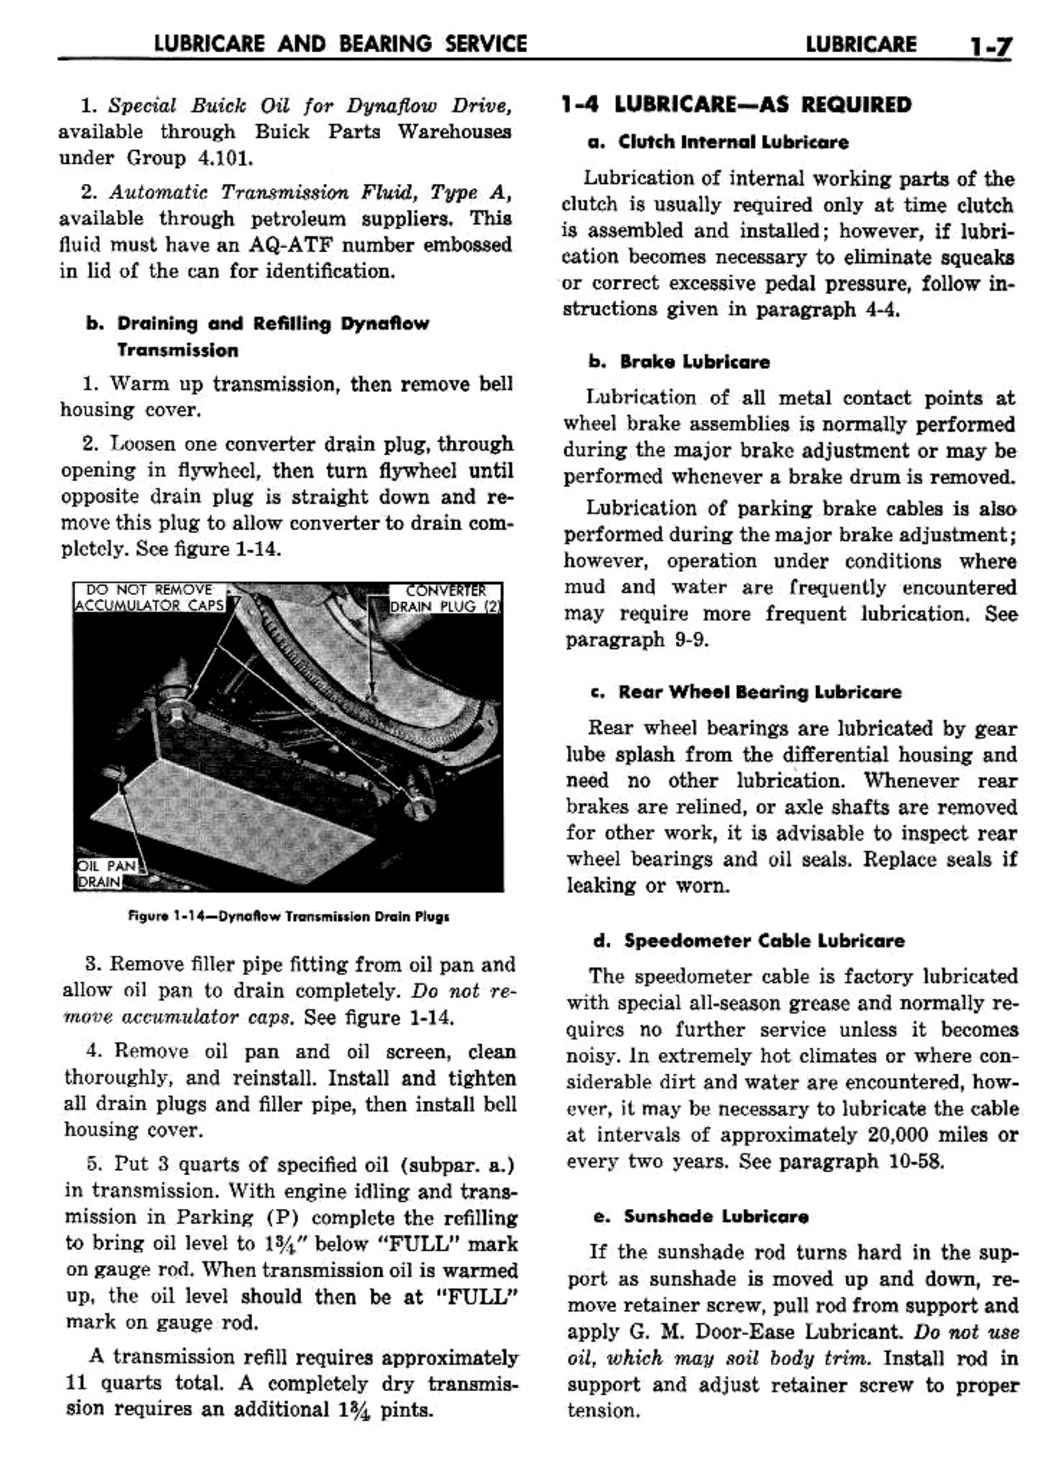 n_02 1957 Buick Shop Manual - Lubricare-007-007.jpg